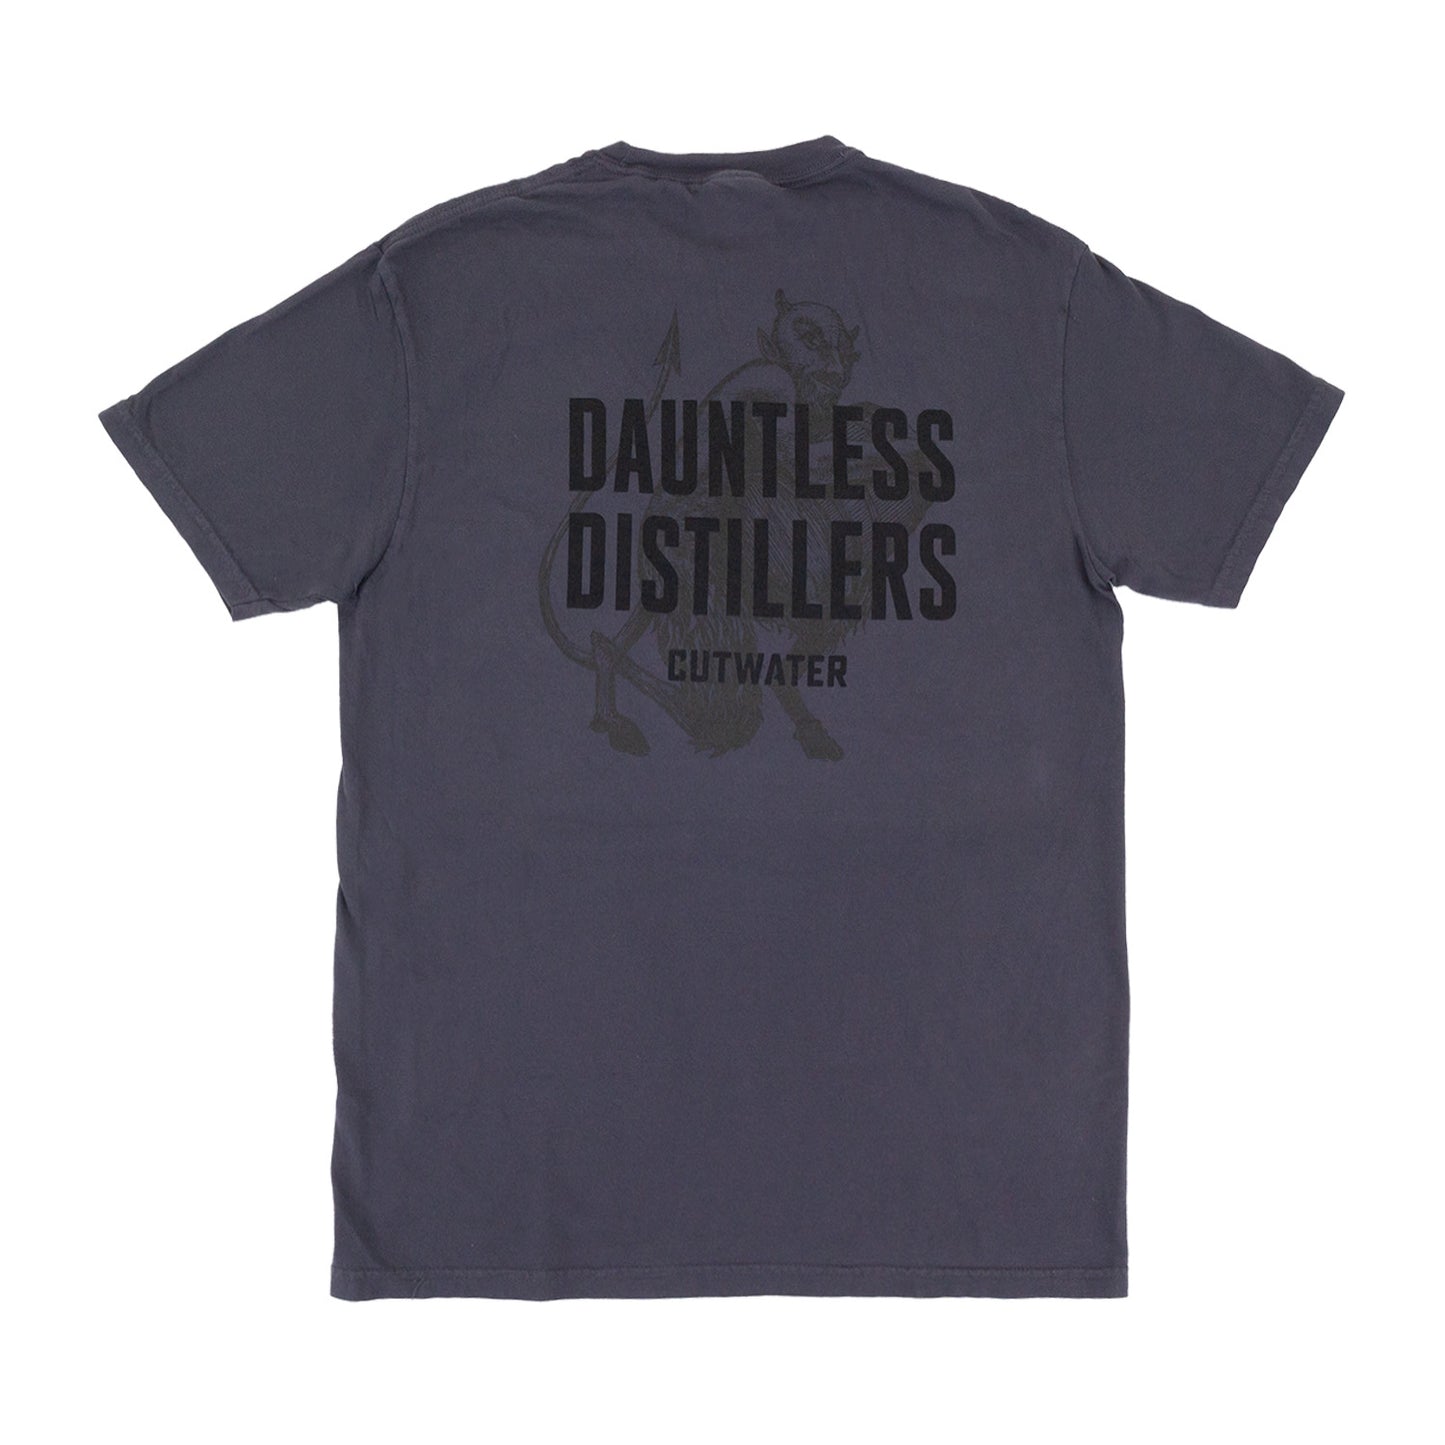 Dauntless Distillers Tee